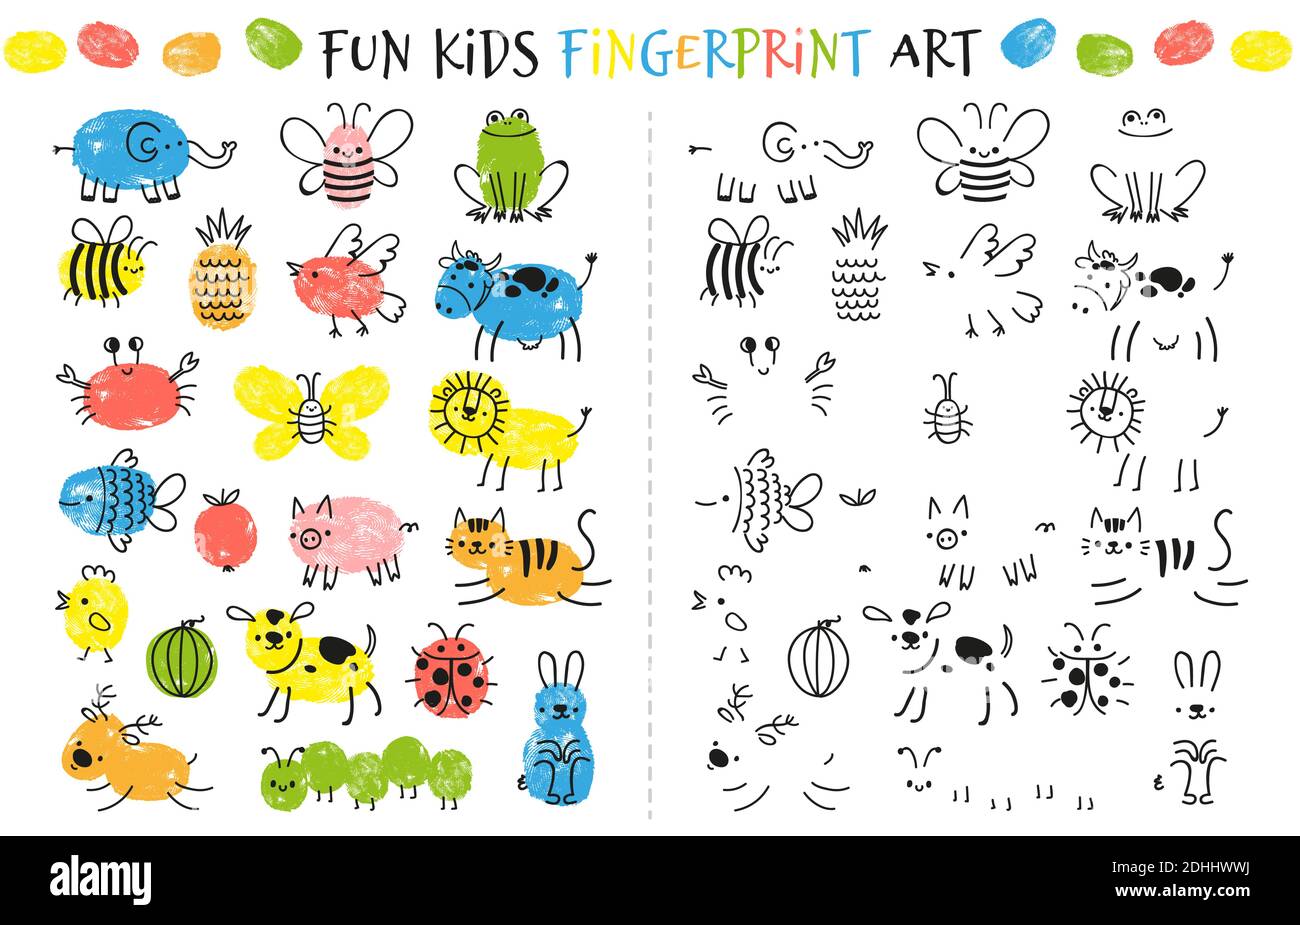 Juego de huellas digitales para niños. Actividad educativa divertida para que los niños estudien para pintar con los dedos. Animales de fideos e insectos dibujando vectores Ilustración del Vector